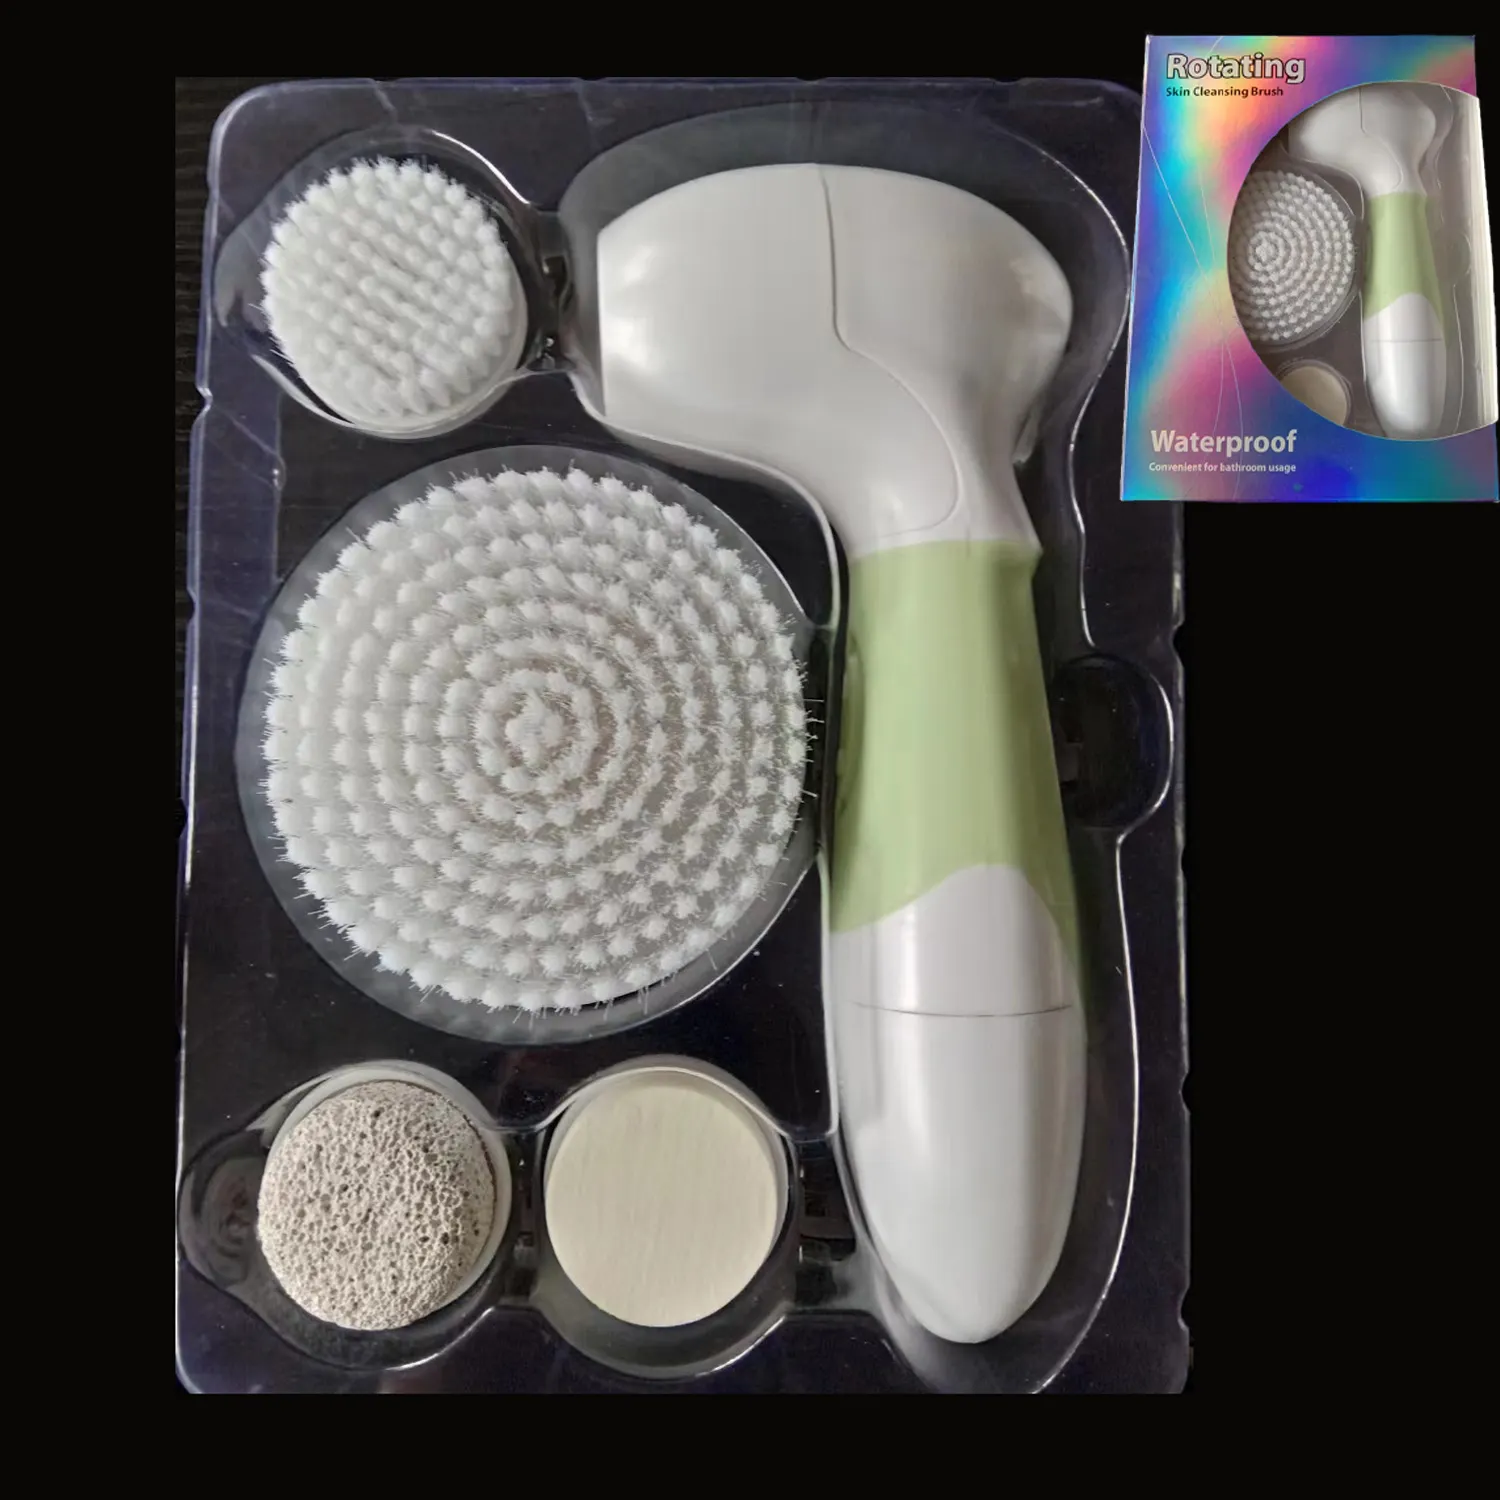 Juego de cepillos giratorios de limpieza Facial a prueba de agua Popular, cepillo limpiador facial eléctrico con 5 cabezales de cepillo exfoliante